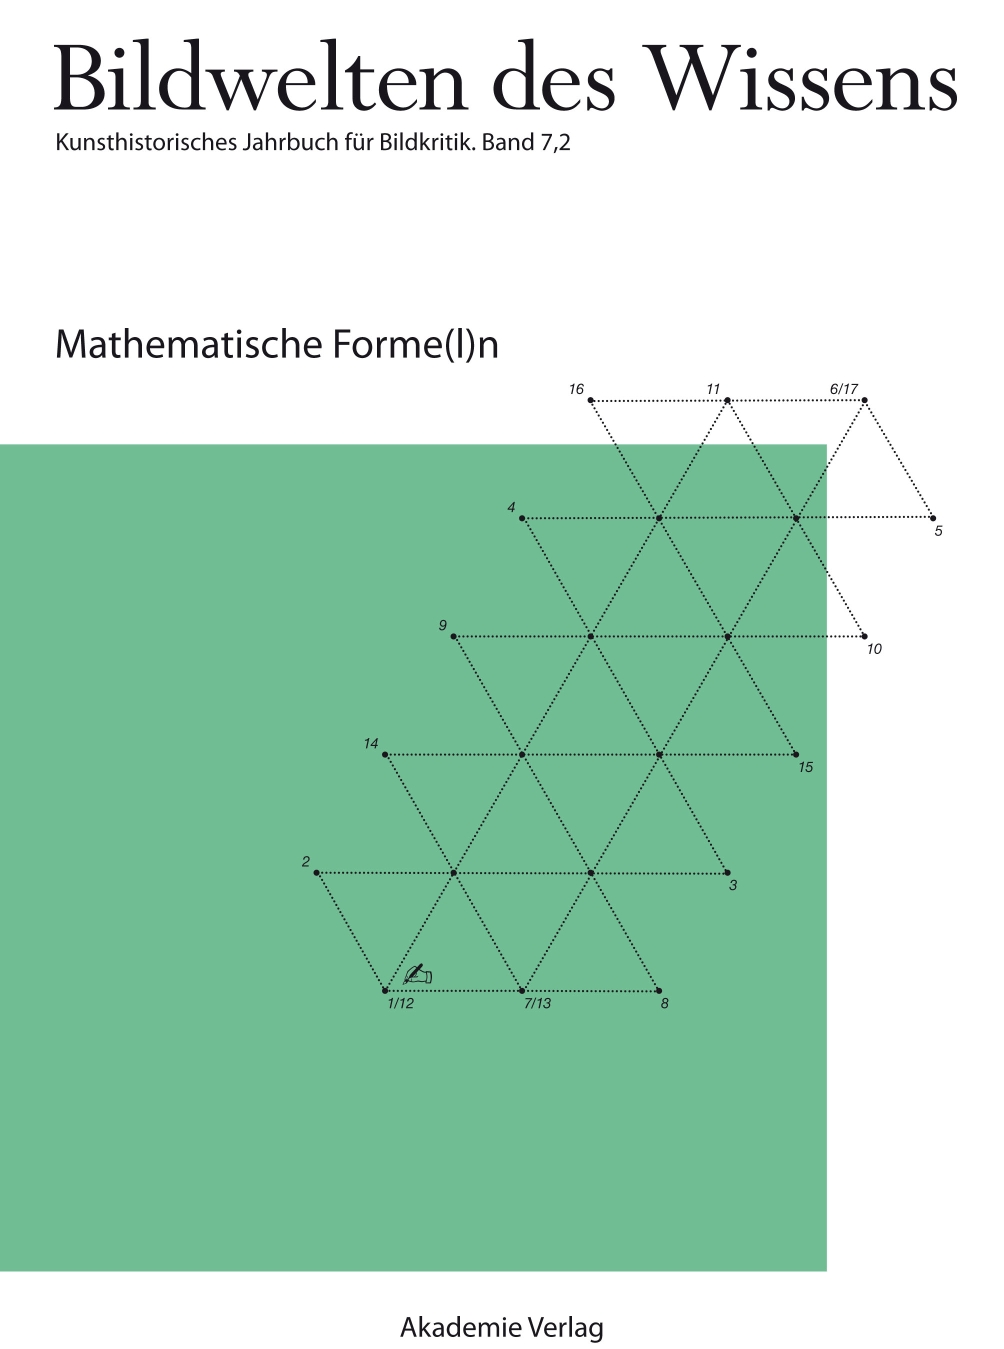 BW 7-2 Mathematische Forme(l)n.jpg